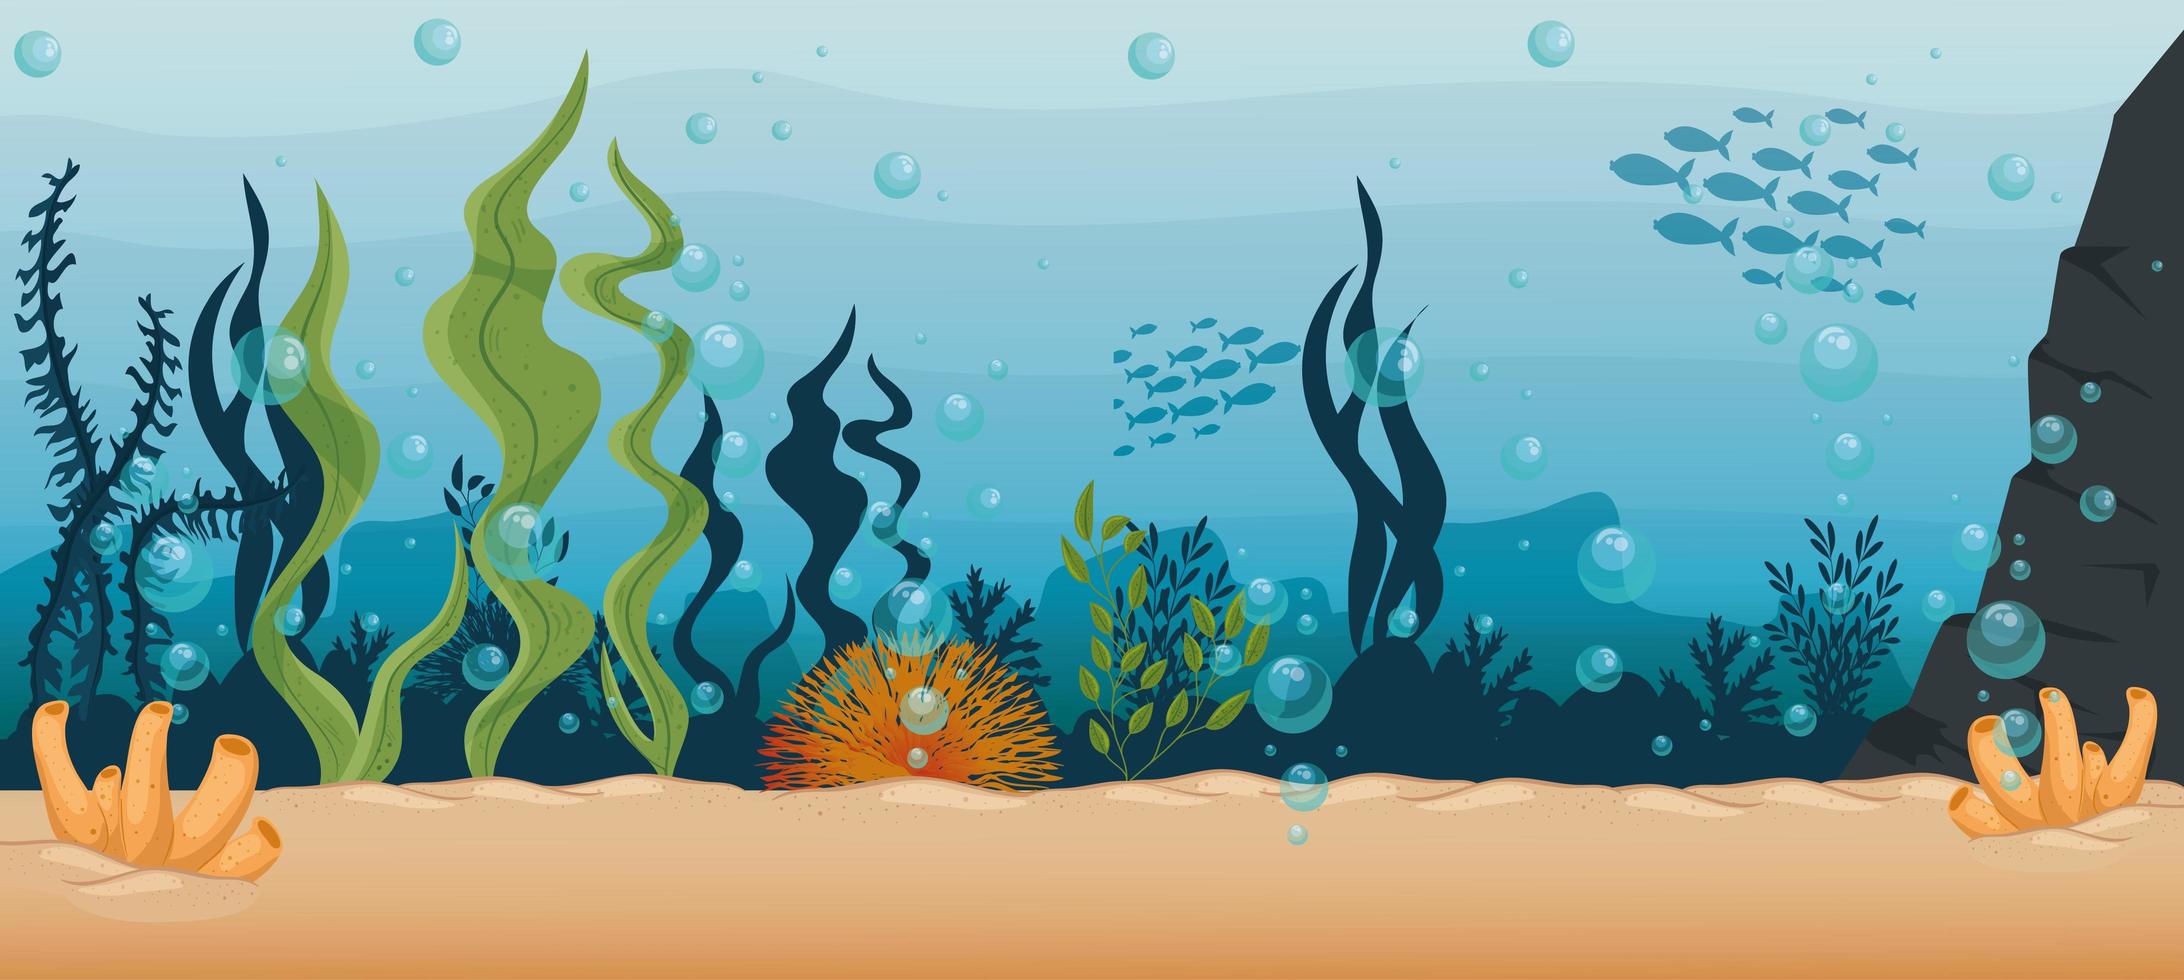 Fondo submarino con algas y arrecifes de coral. vector